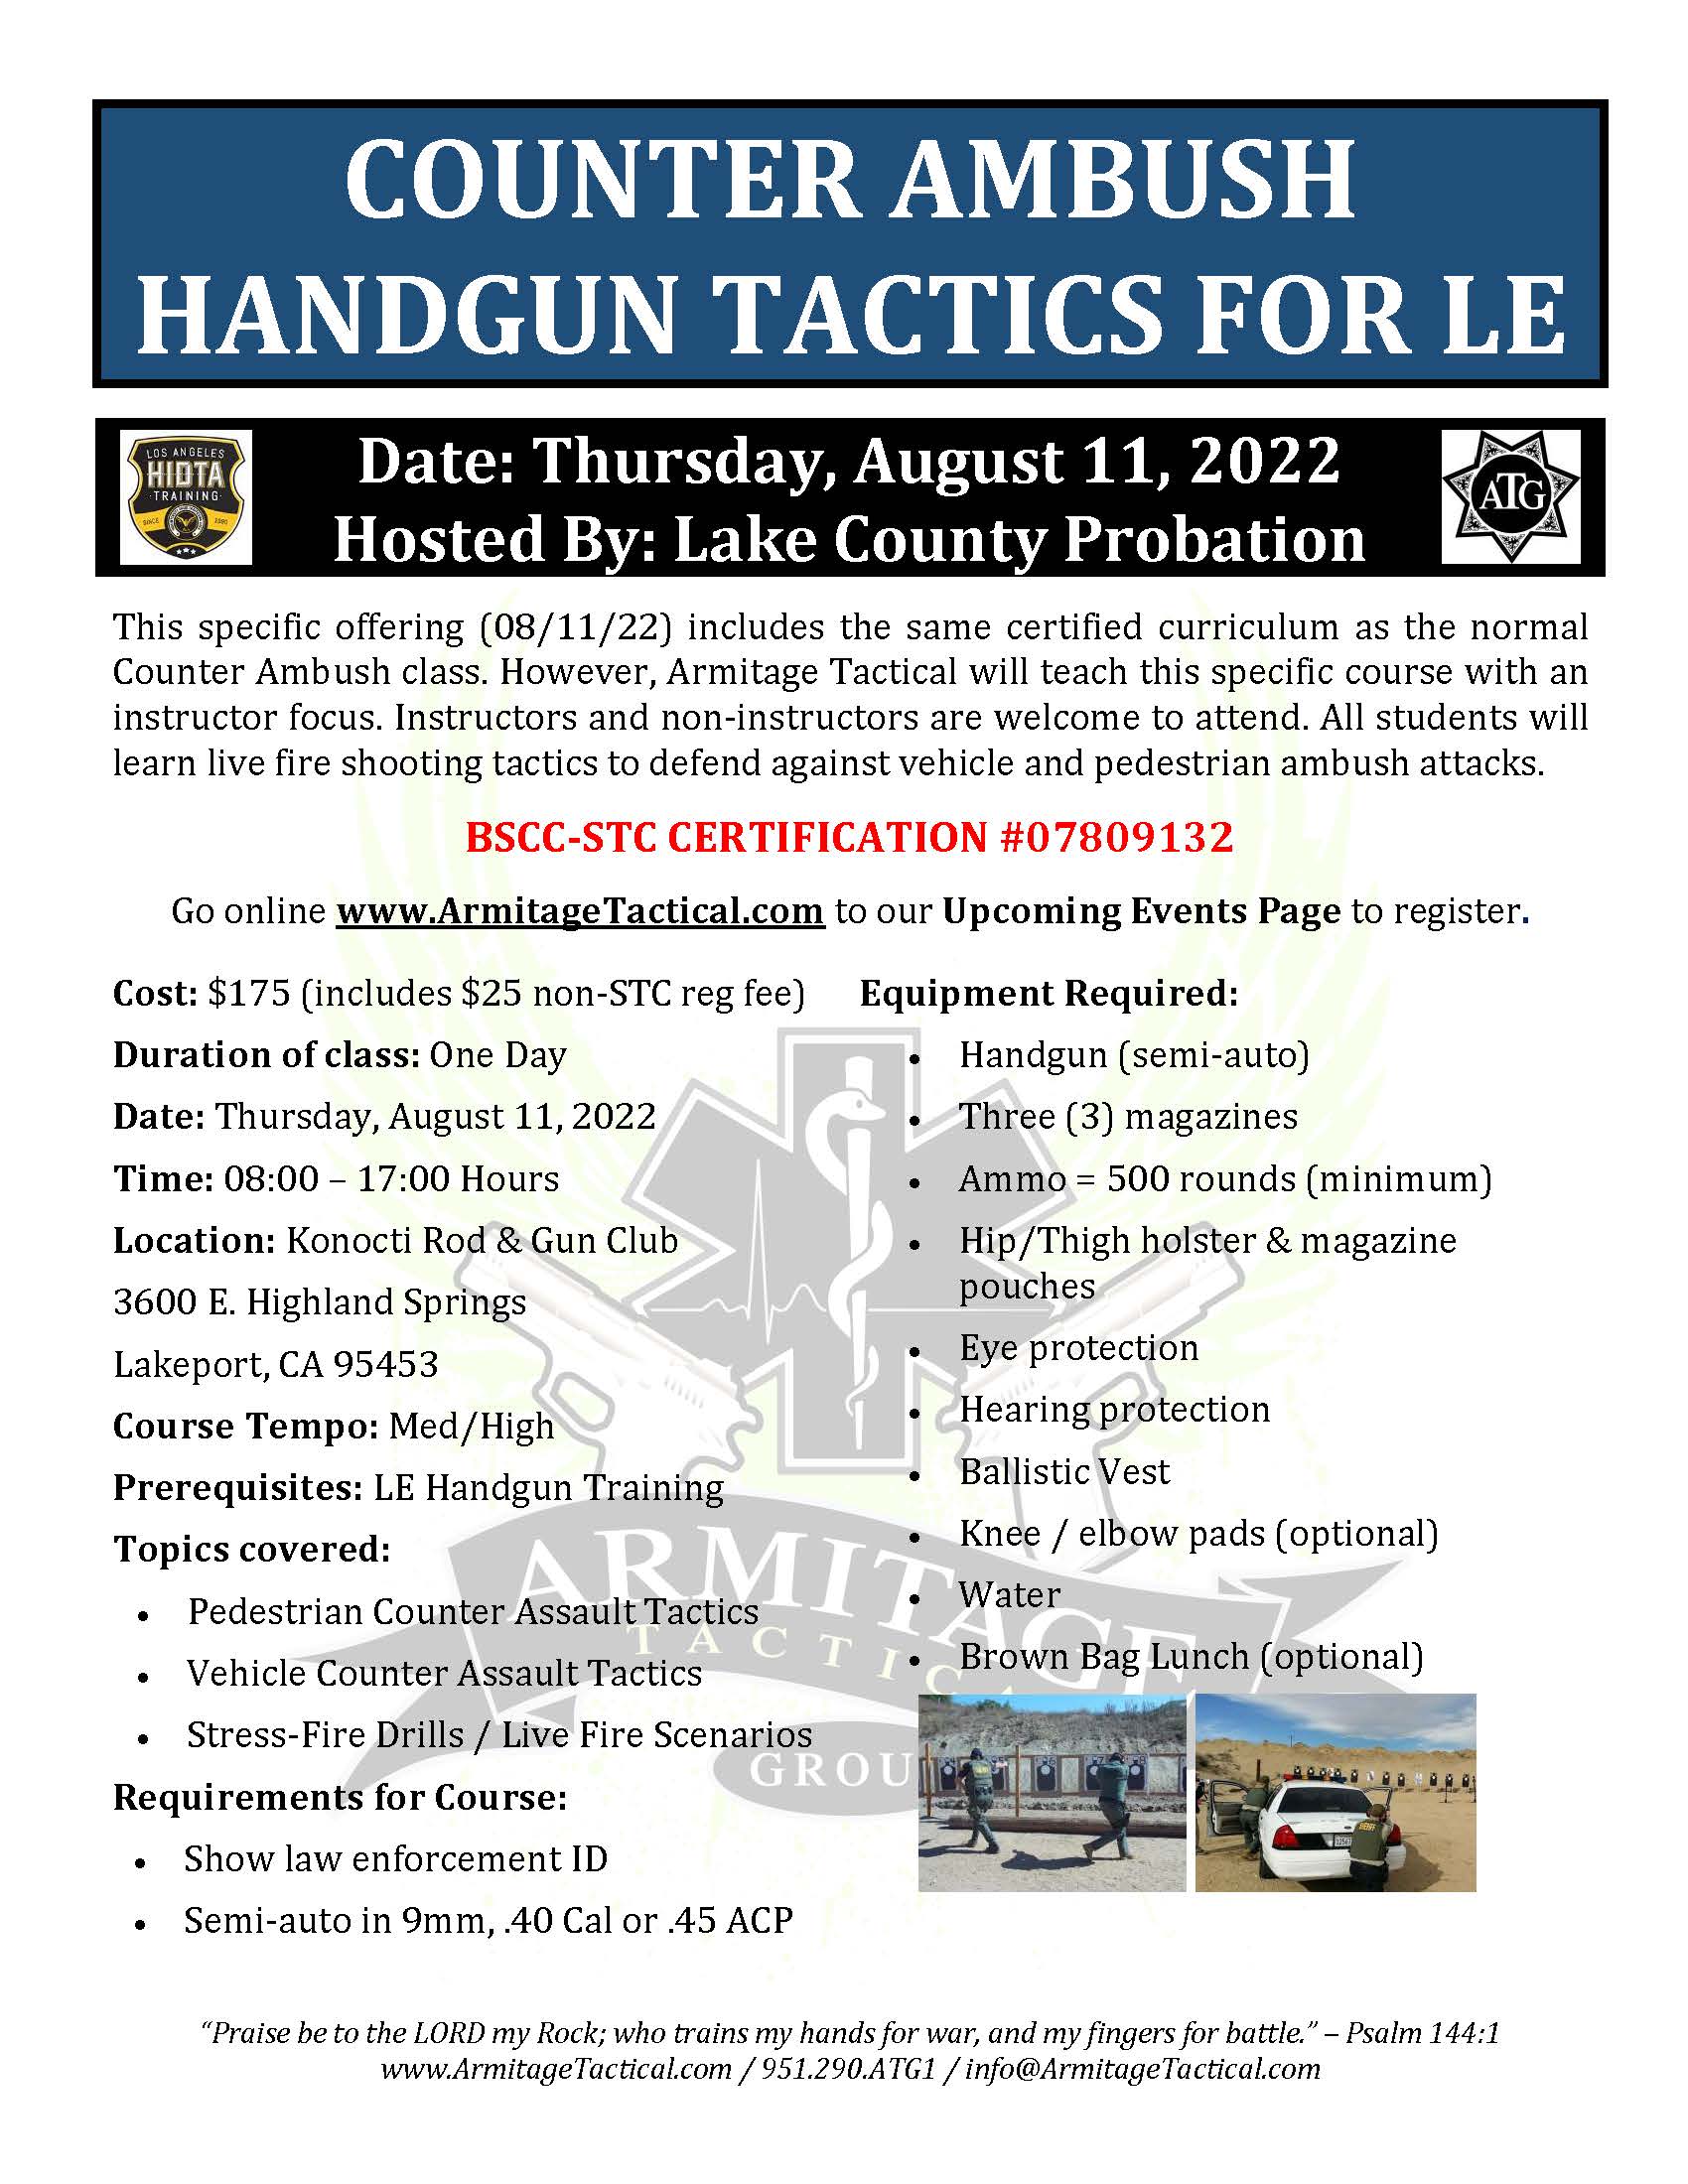 2022/08/11 - Counter Ambush Handgun Tactics for LE/Mil - Lakeport, CA